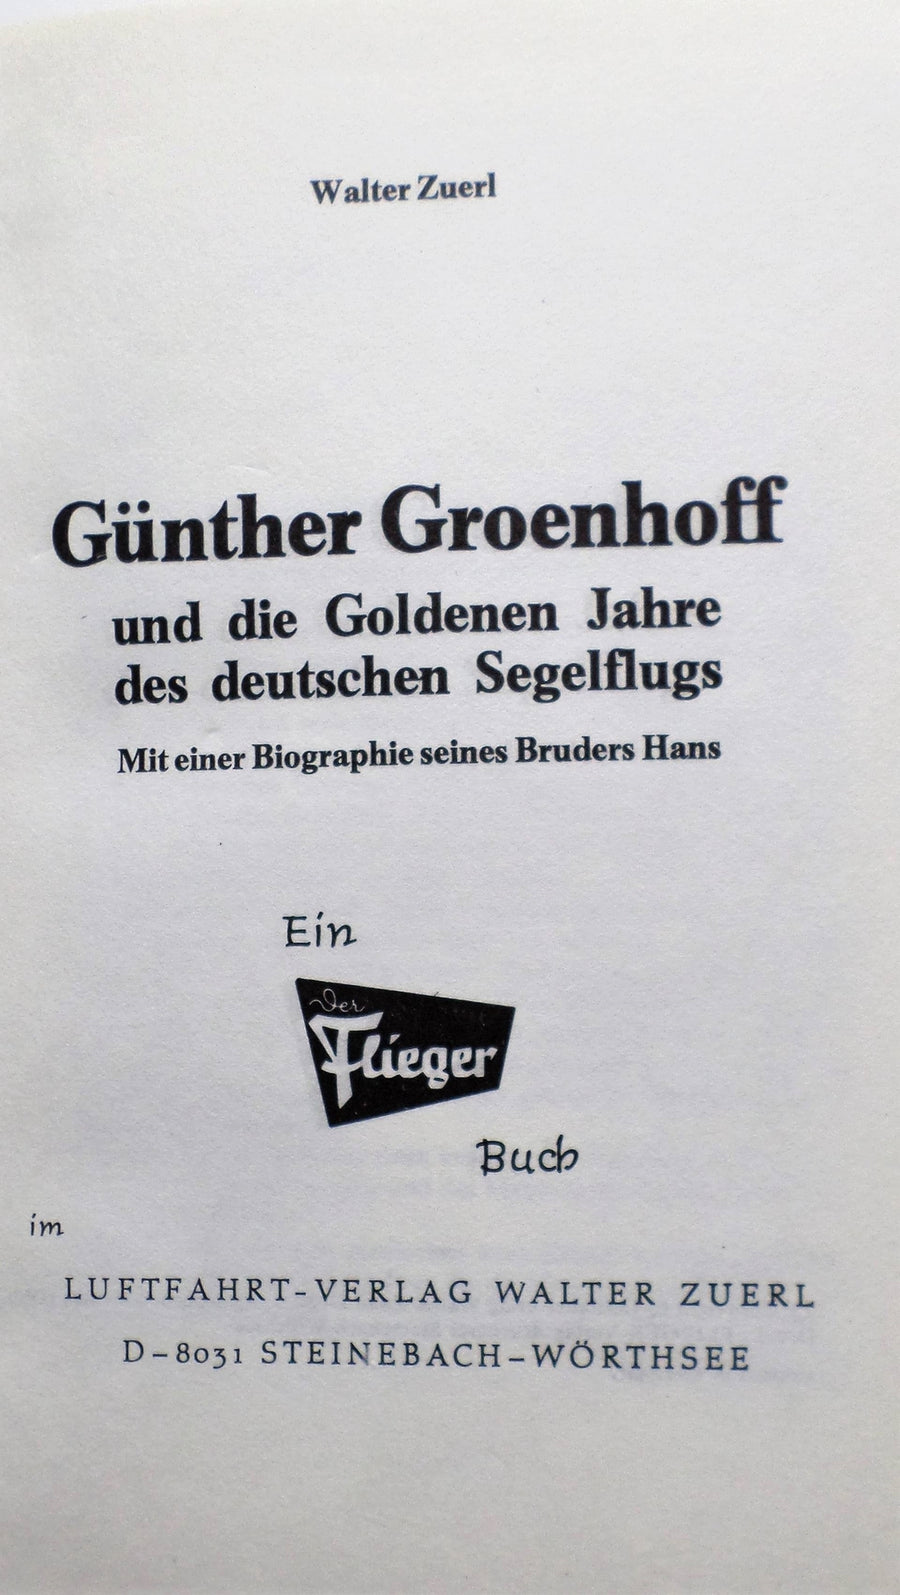 Günther Groenhoff und die Goldenen Jahre des deutschen Segelflugs